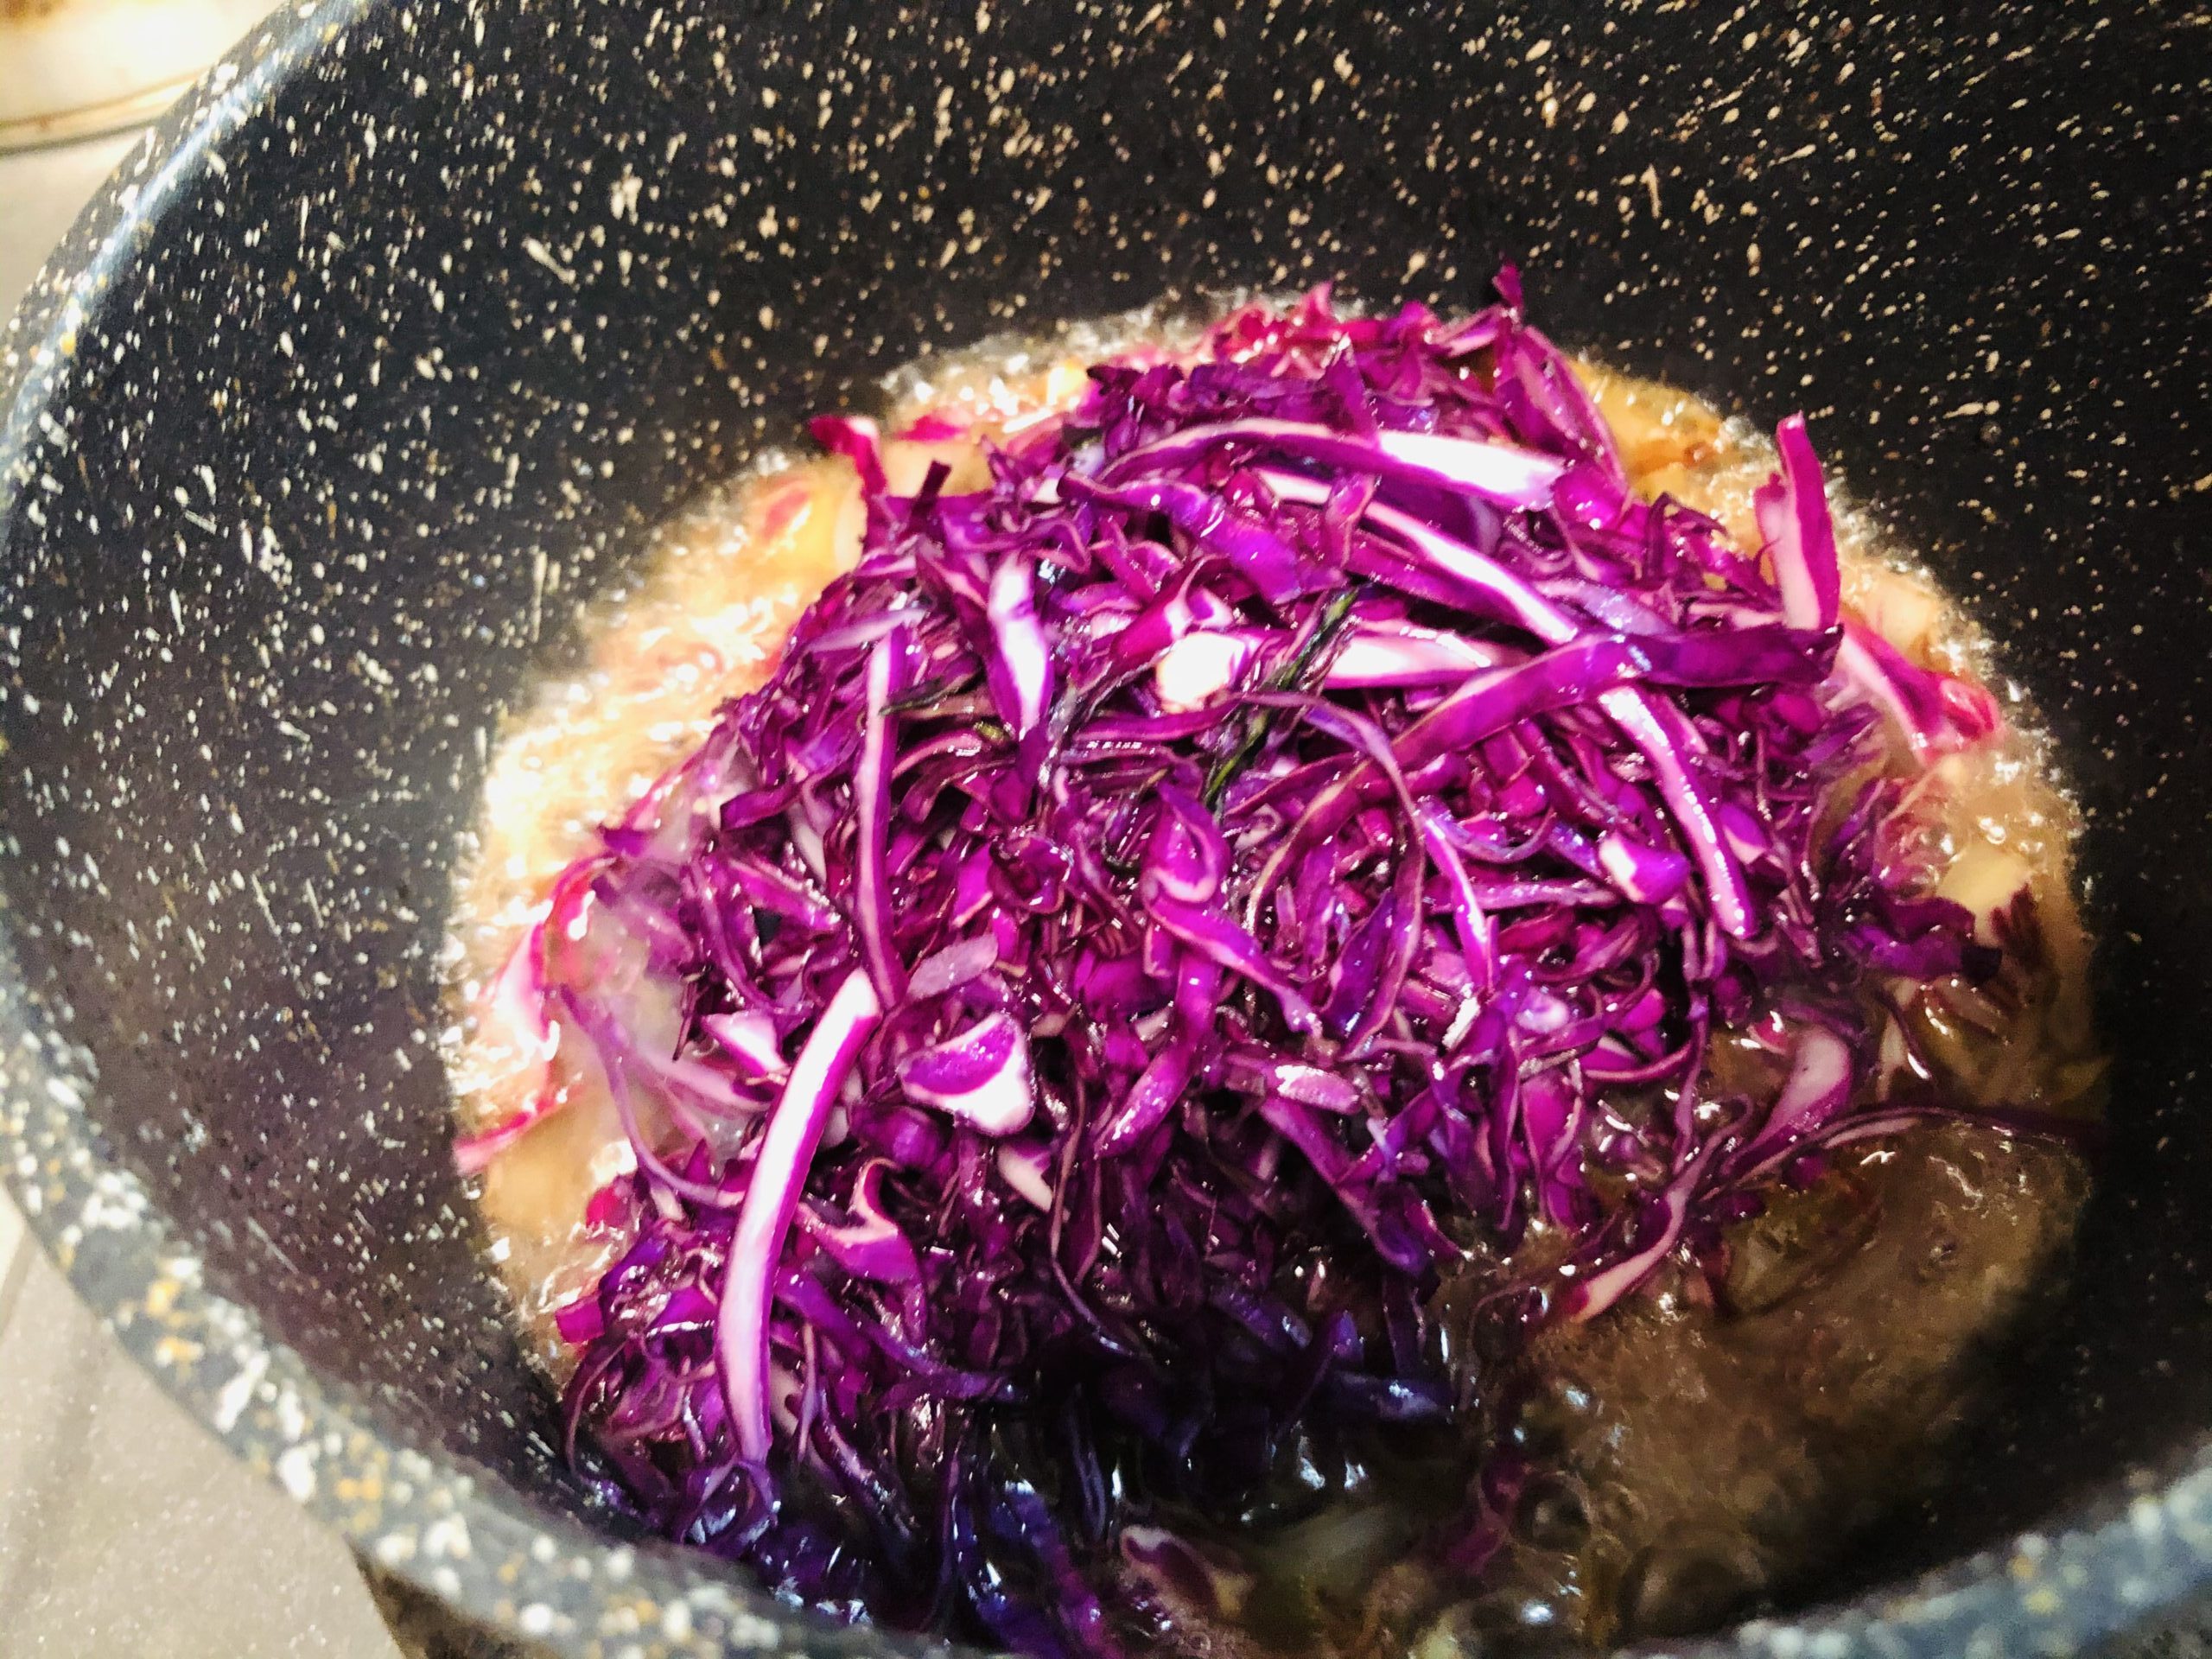 小鍋に塩もみした紫キャベツを入れる様子の画像です